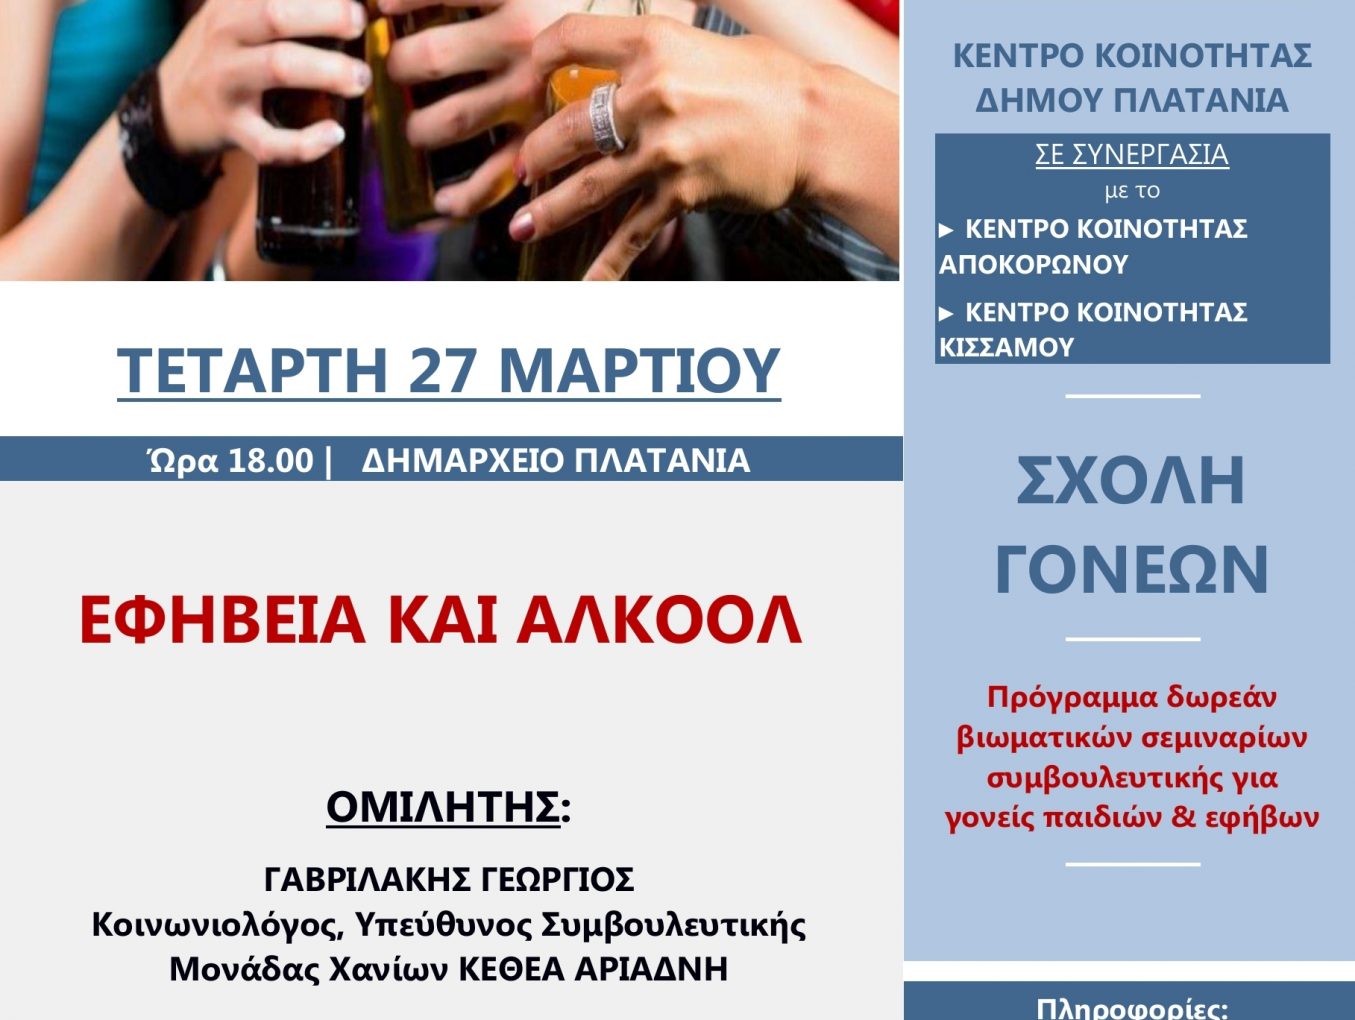 Συμβουλευτική ημερίδα με θέμα: “Εφηβεία και Αλκοόλ” στο Δήμο Πλατανιά: Στο πλαίσιο του διαδημοτικού προγράμματος «Σχολές Γονέων»